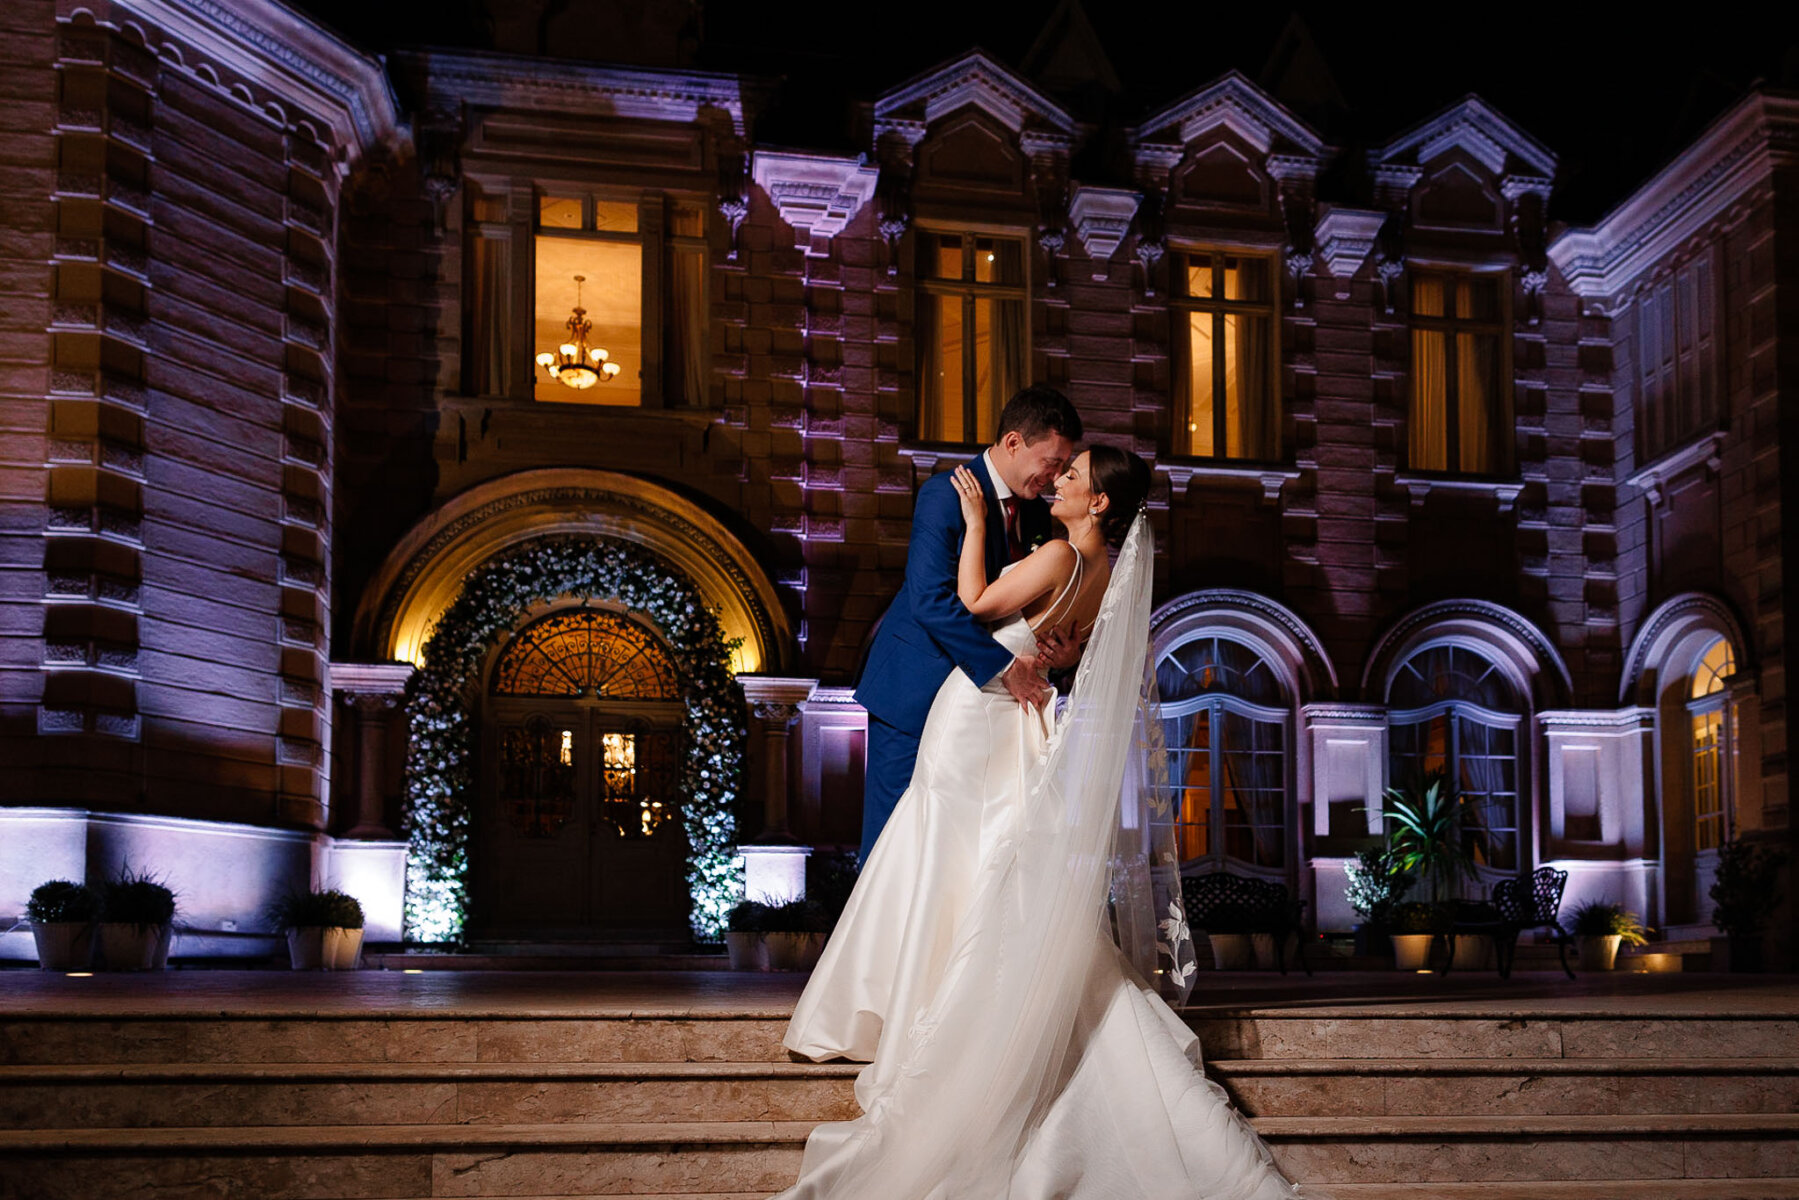 Casamento moderno: Noivos posam para foto em frente ao Castelo do Batel | | Fotos: Emerson Fiuza